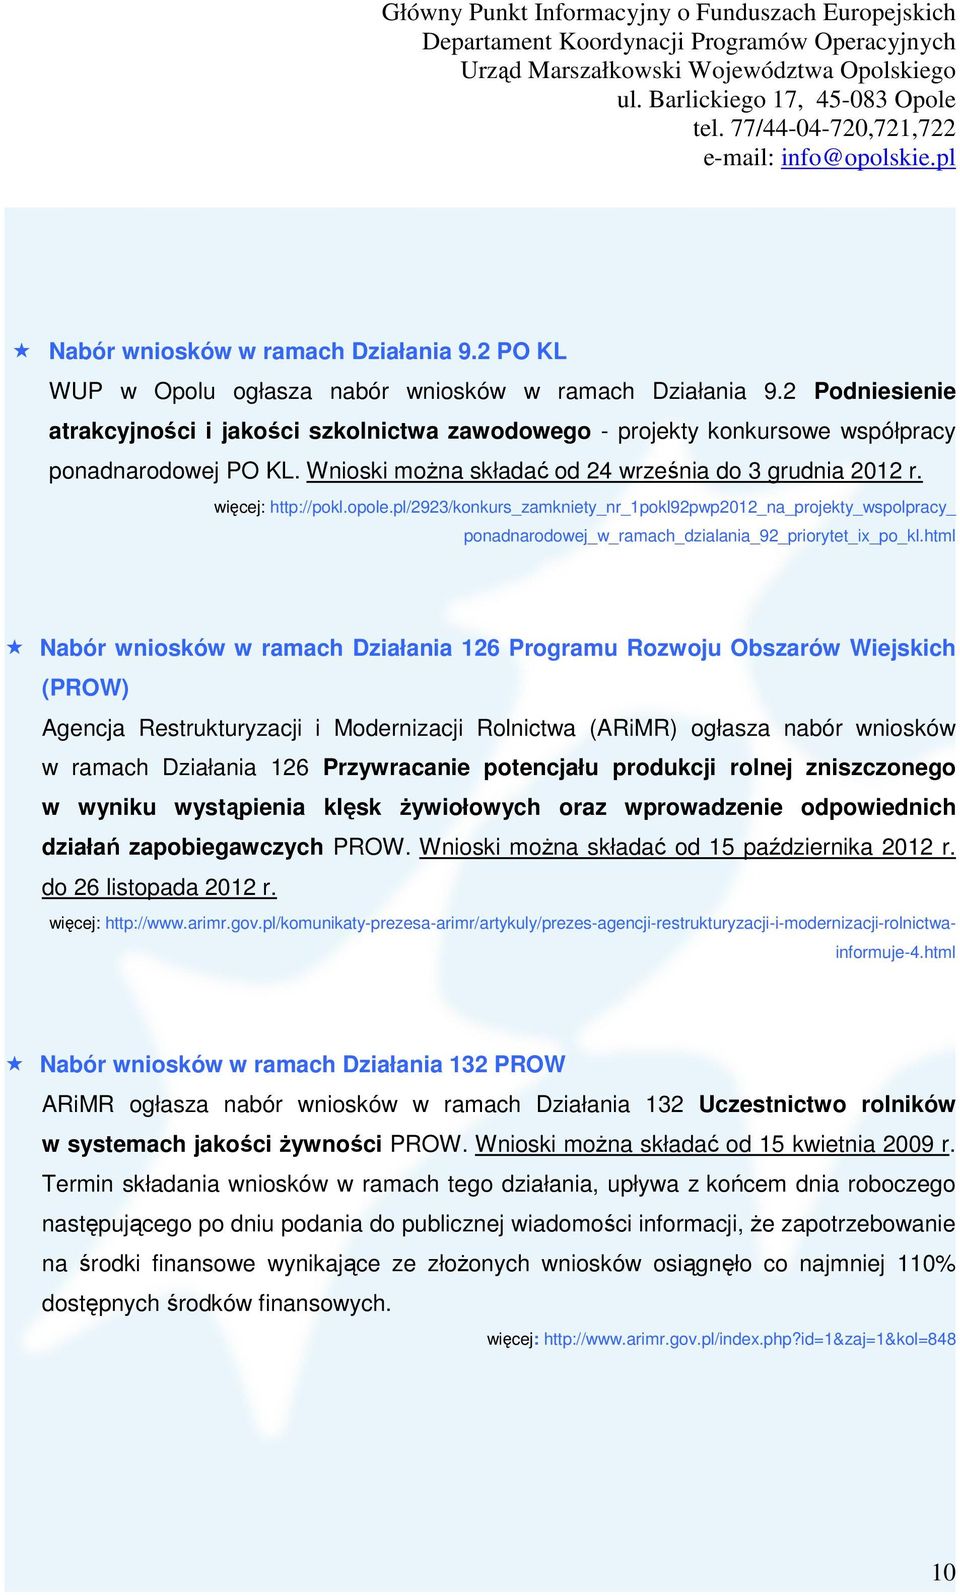 opole.pl/2923/konkurs_zamkniety_nr_1pokl92pwp2012_na_projekty_wspolpracy_ ponadnarodowej_w_ramach_dzialania_92_priorytet_ix_po_kl.